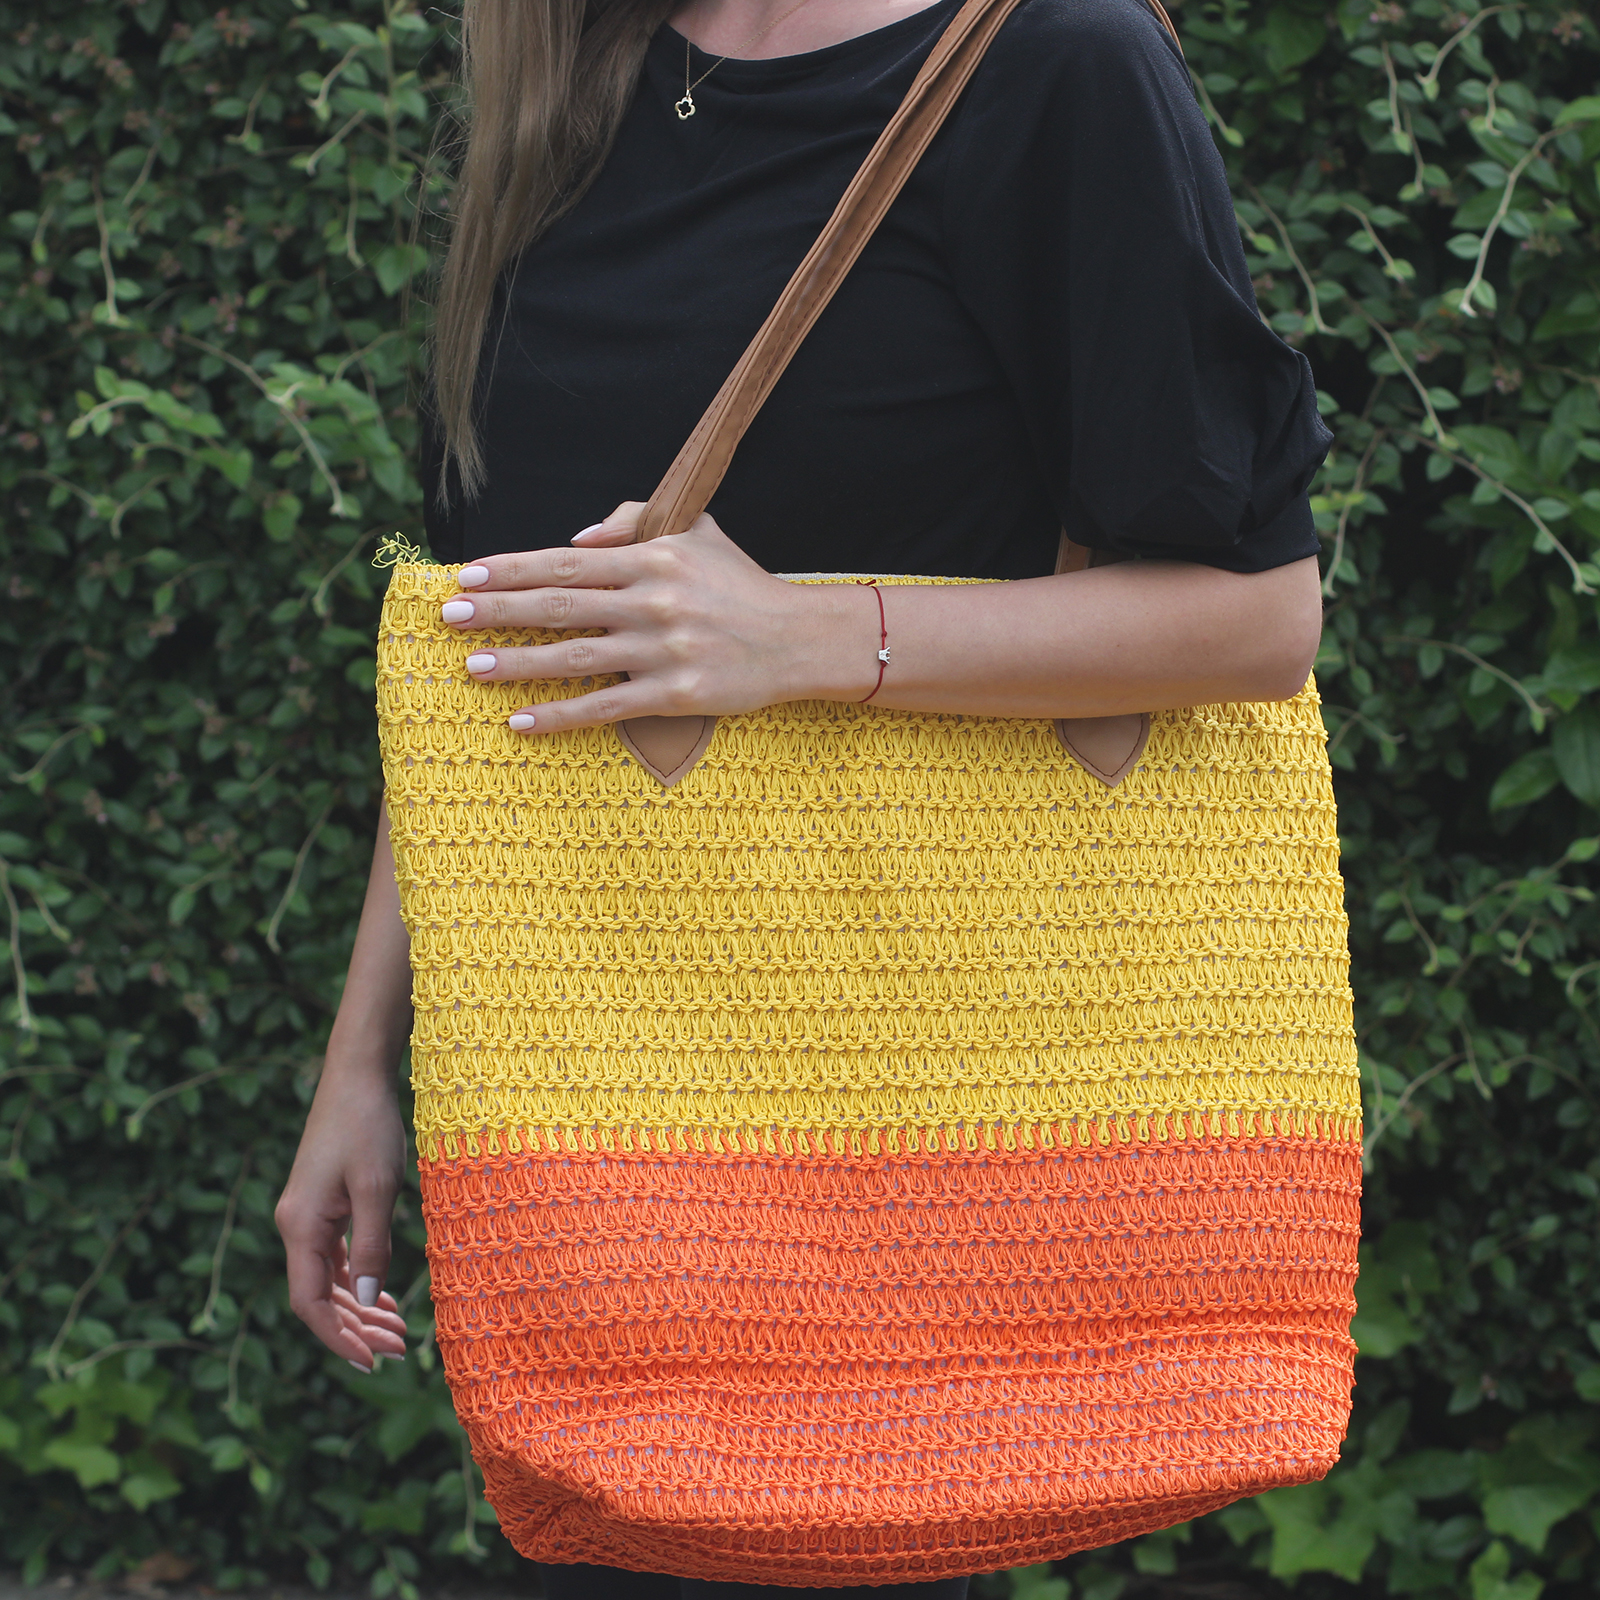 Nákupní taška - Žlutá & Oranžová